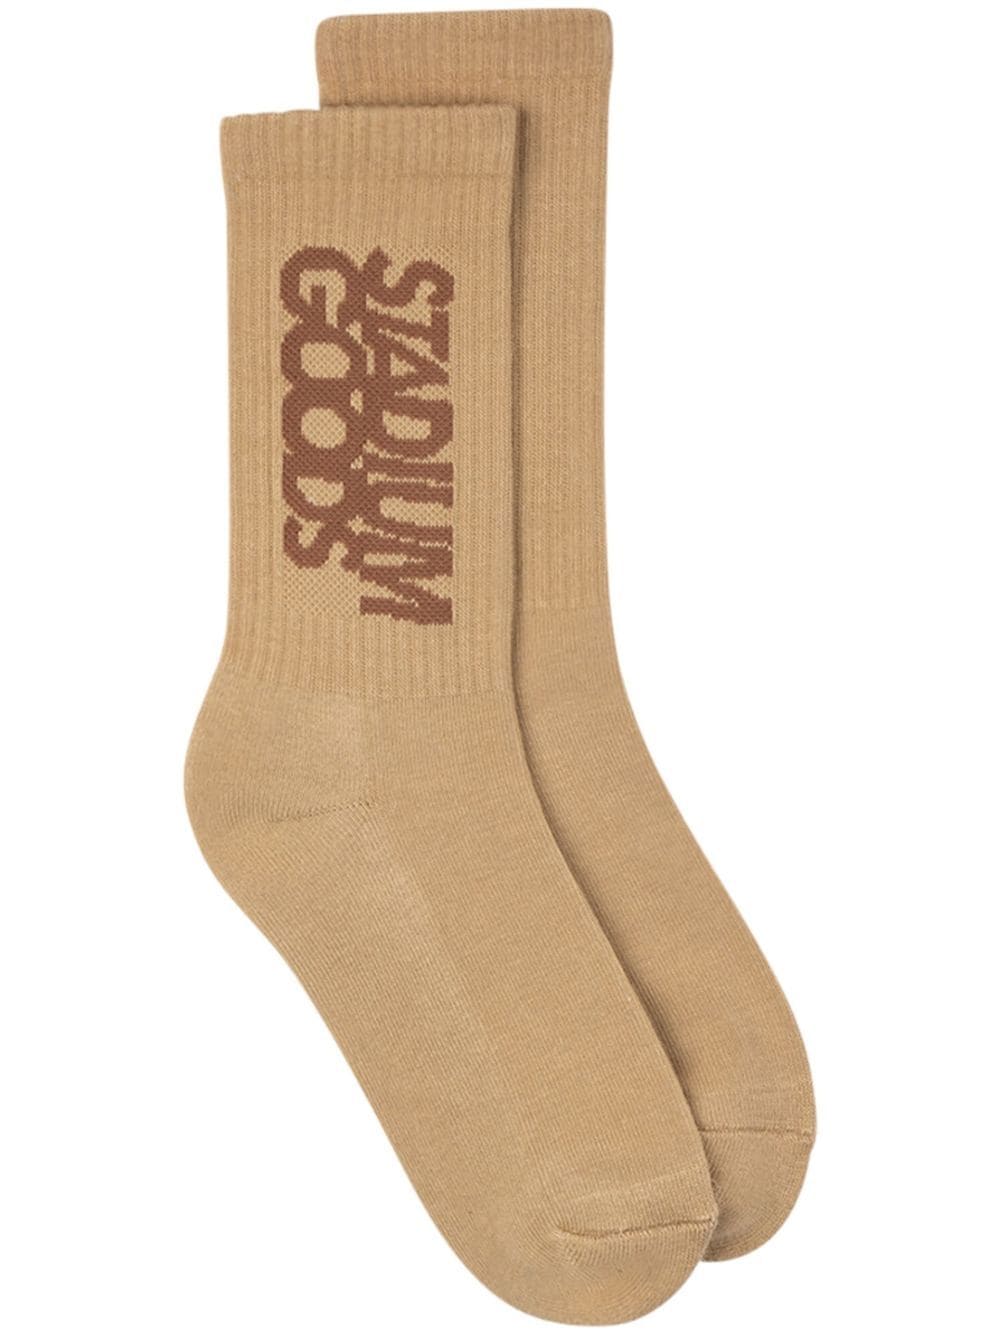 STADIUM GOODS® Crew Socks "Cappuccino" sneakers - Neutrals von STADIUM GOODS®